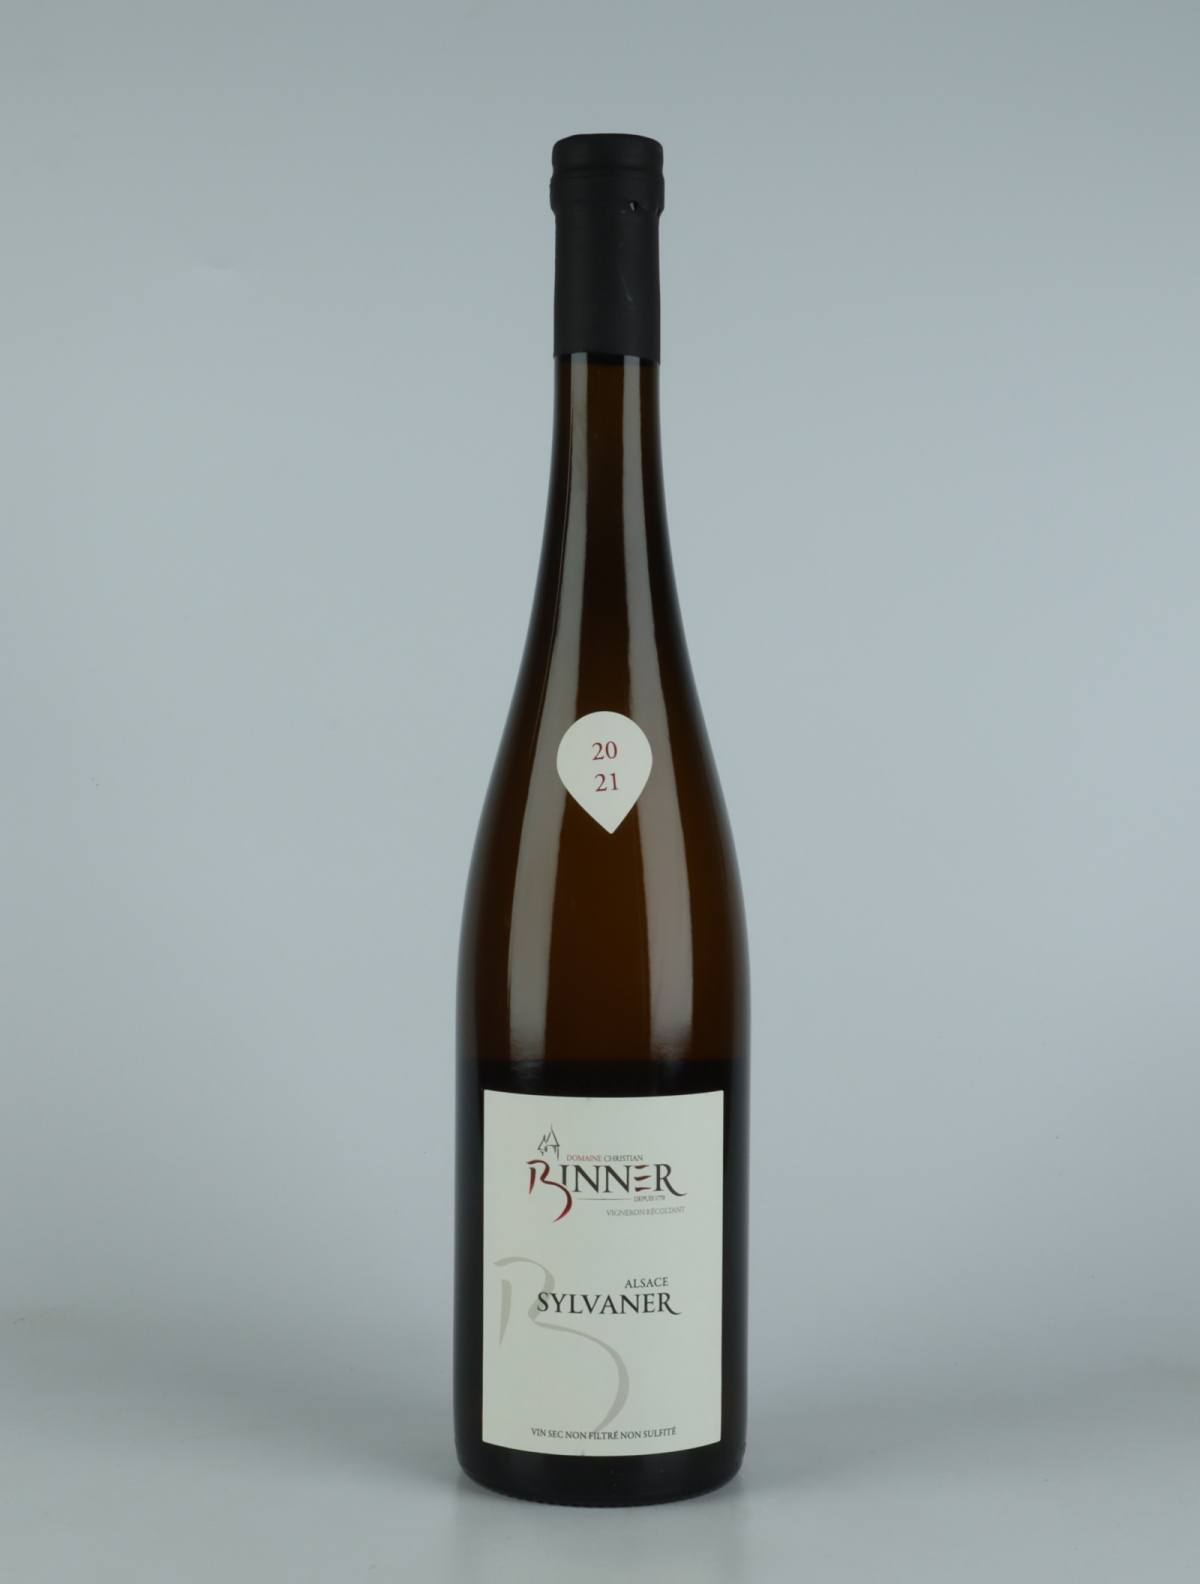 A bottle N.V. Sylvaner (20/21) White wine from Domaine Christian Binner, Alsace in France